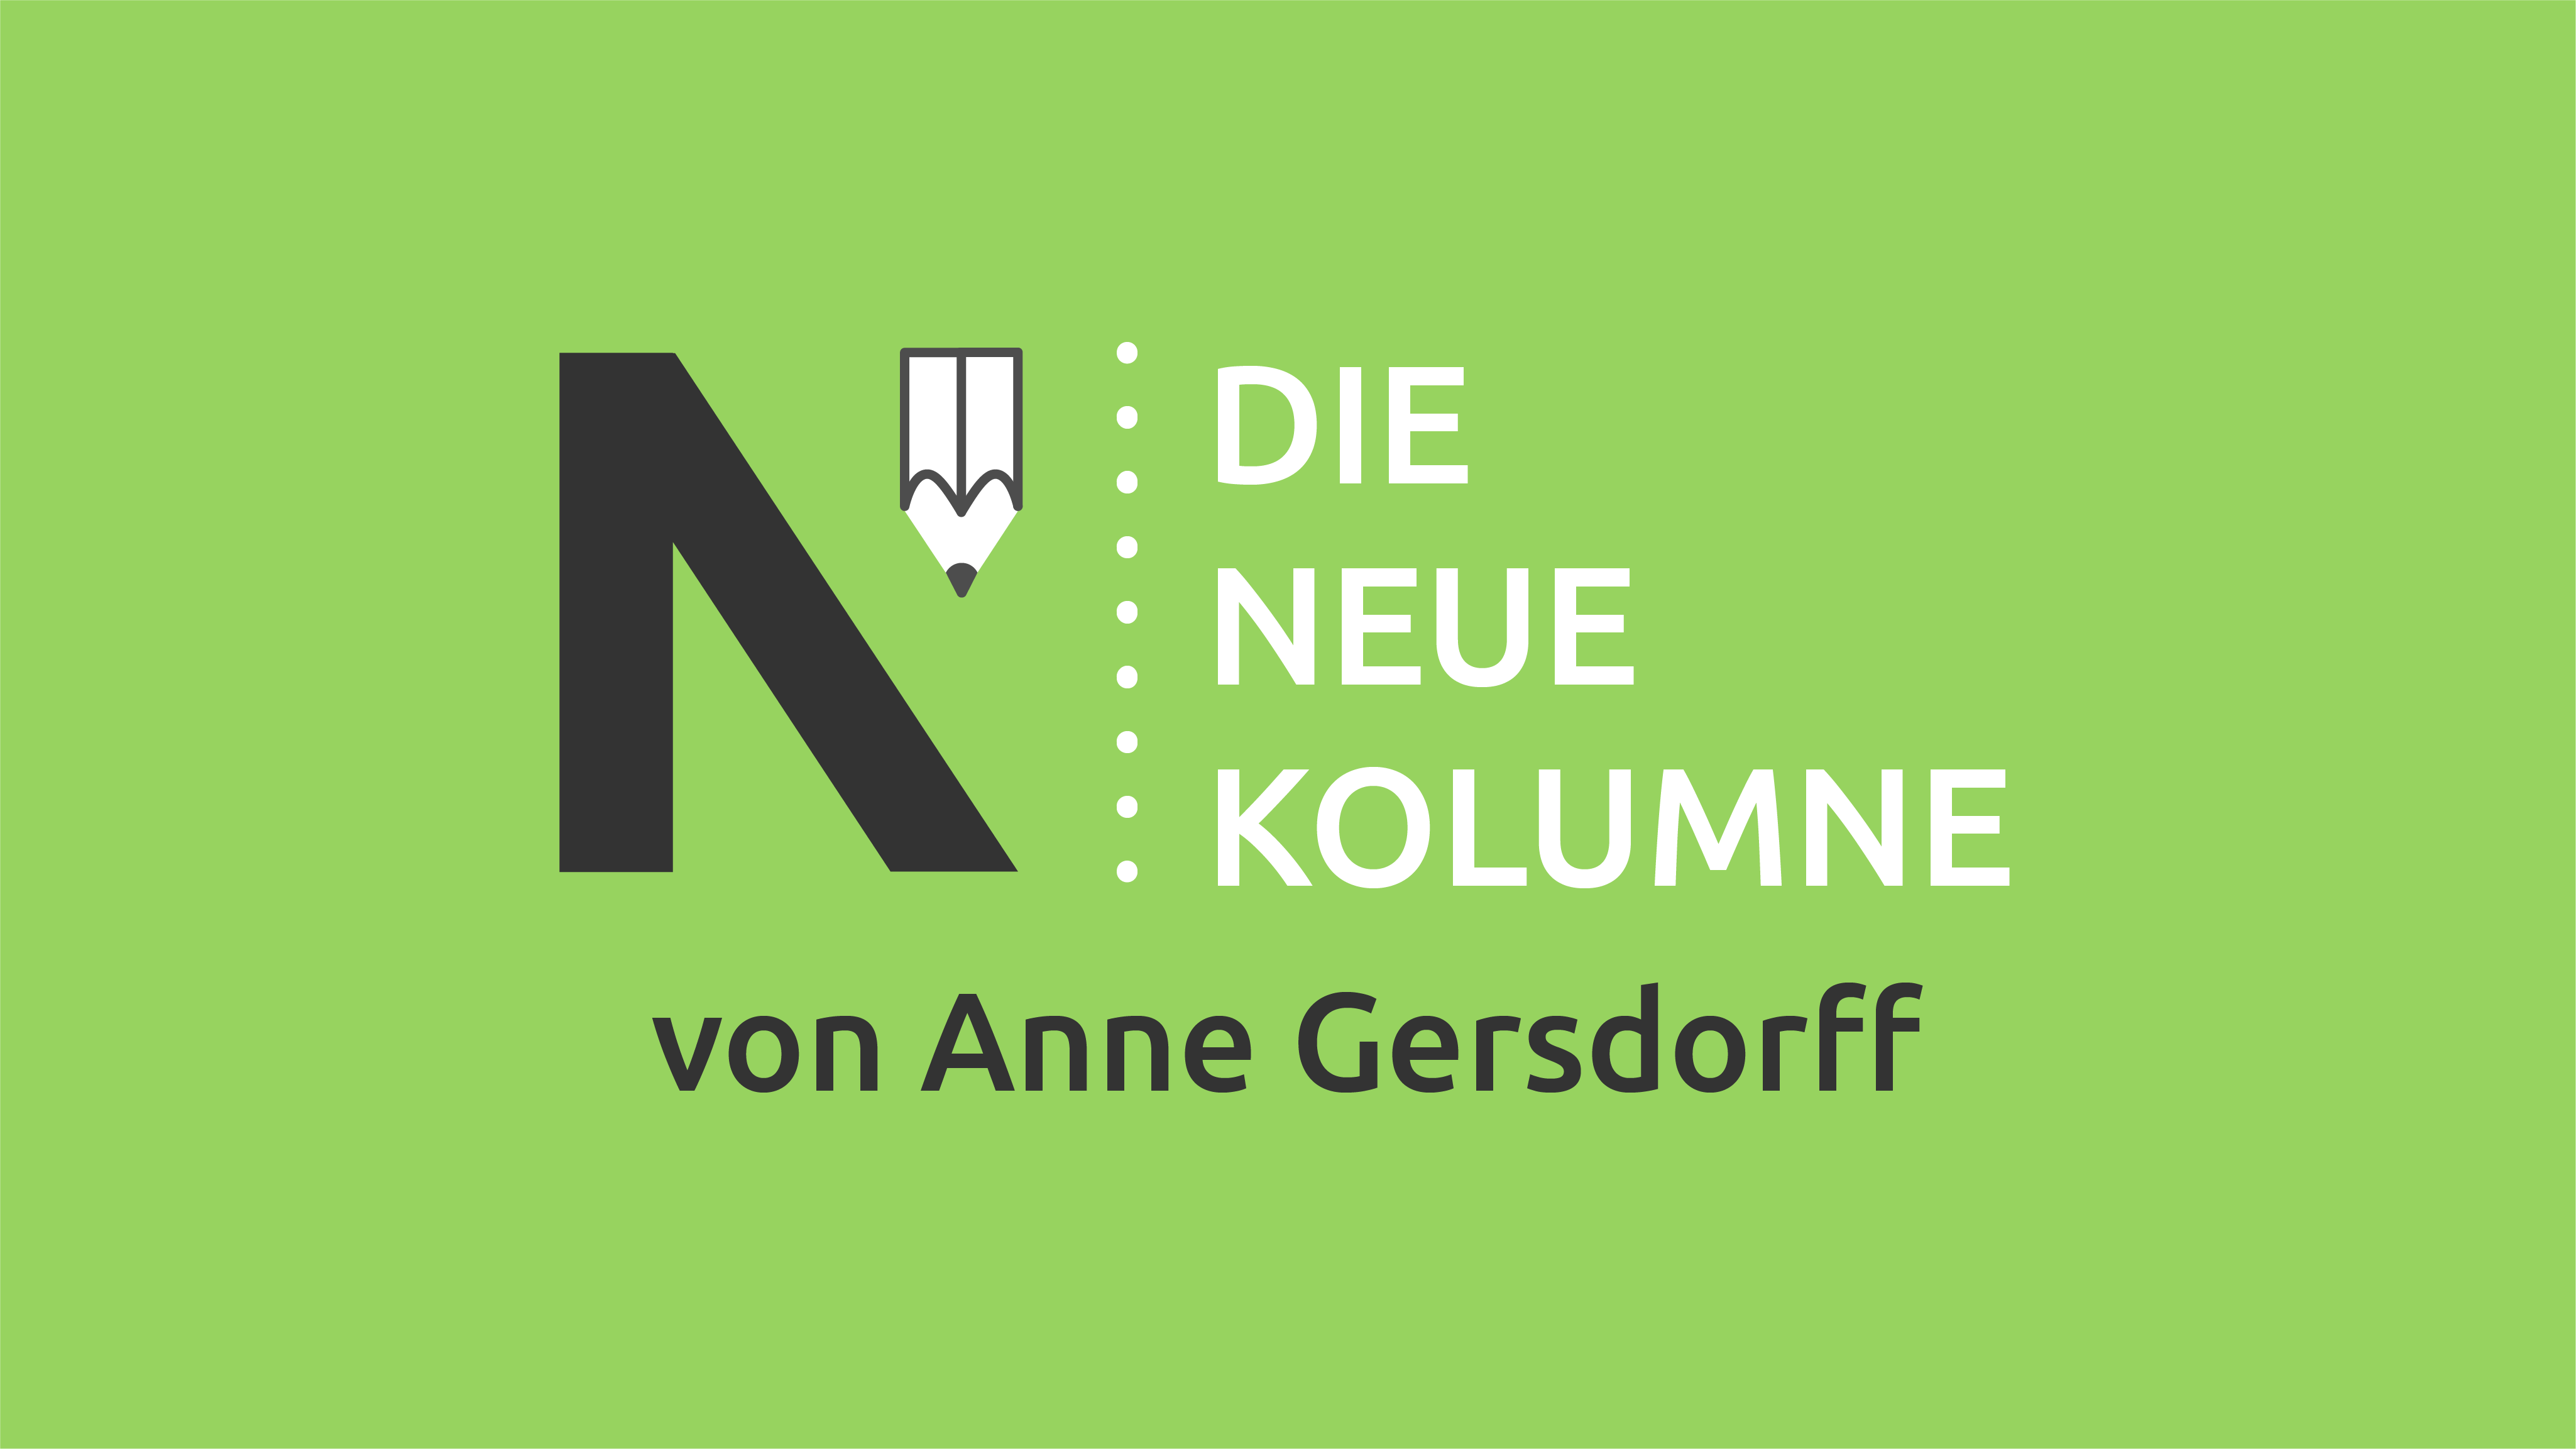 Das schwarz-weiße Logo von Die Neue Norm. Daneben steht "Die Neue Kolumne". Unten steht: von Anne Gersdorff.